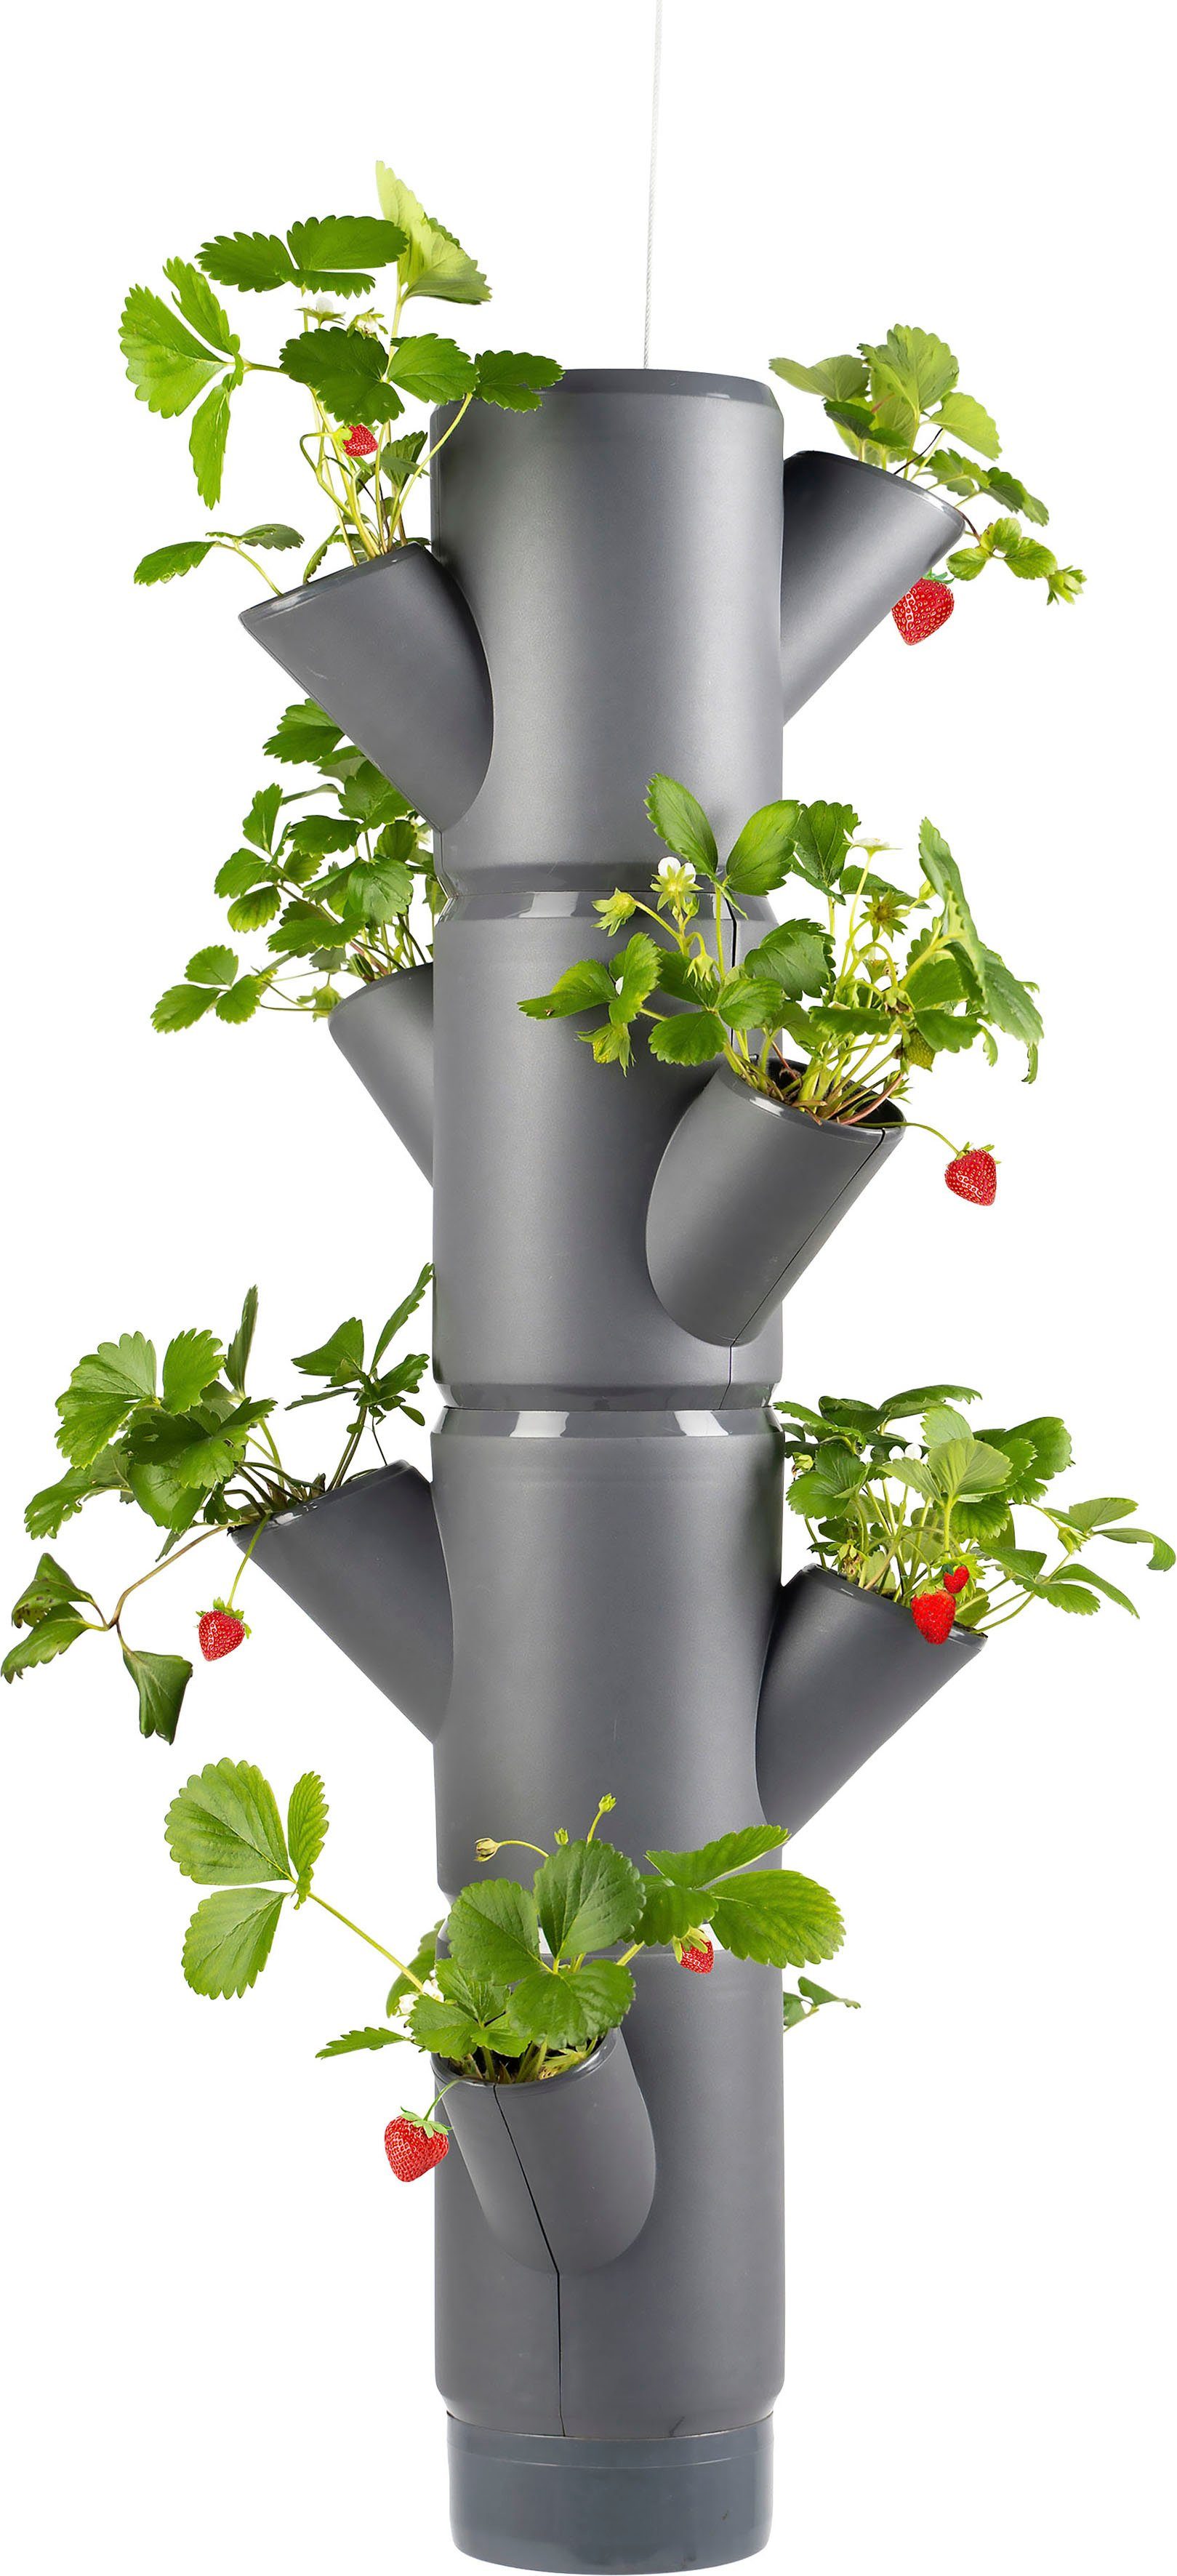 inkl. Gusta SISSI Pflanzkübel anbauen Etagen 4 gemacht Erdbeeren STRAWBERRY Hängeset, Garden Erdbeerampel, leicht anthrazit